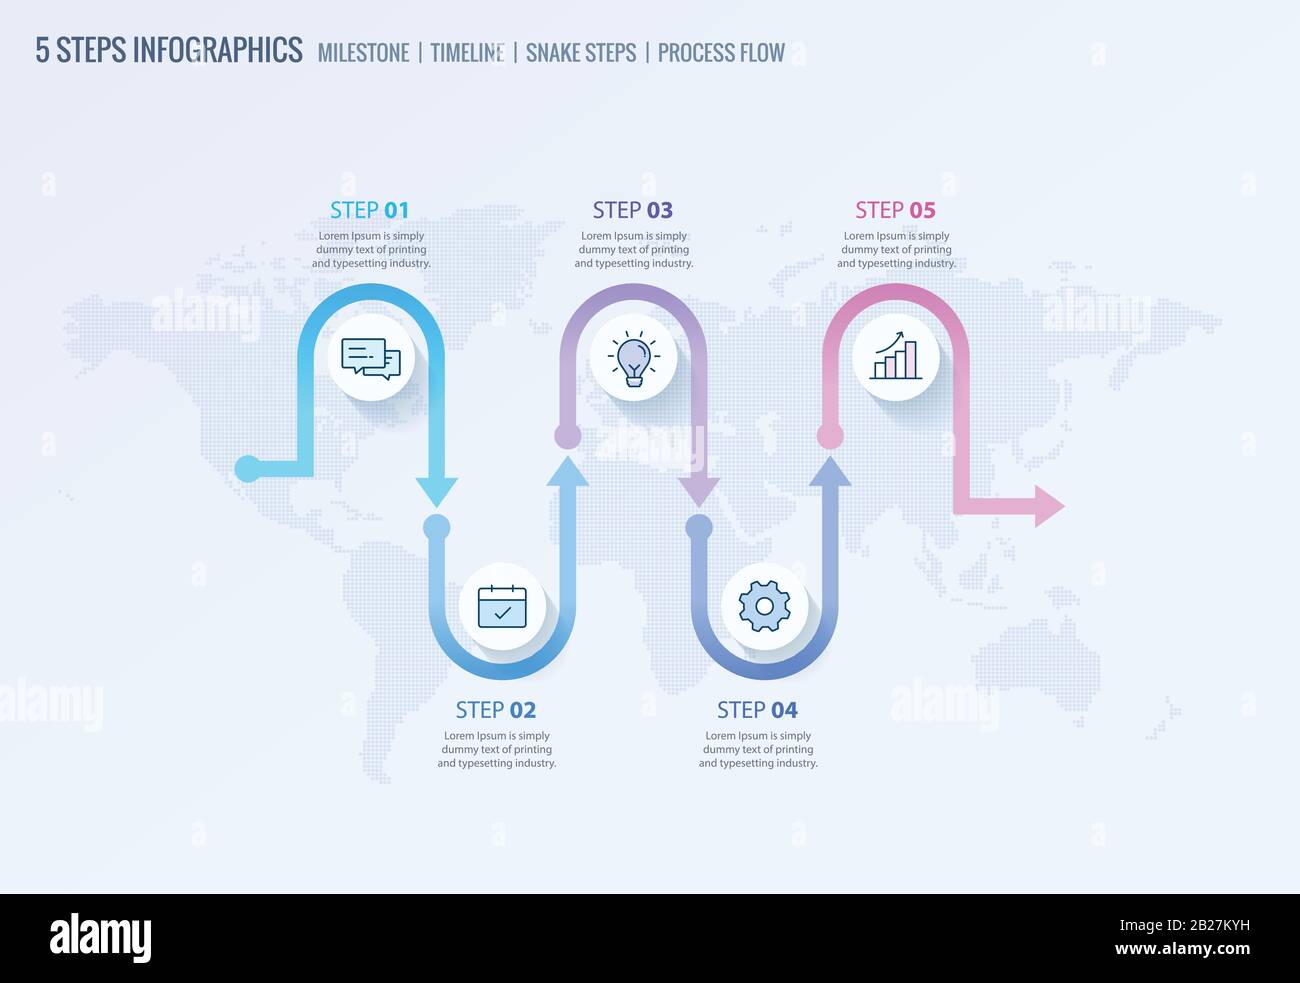 Milestone Infografiken, Timeline Infografiken, Prozessfluss Infografik, Snake Steps Vorlage für Unternehmenspräsentationen Stock Vektor